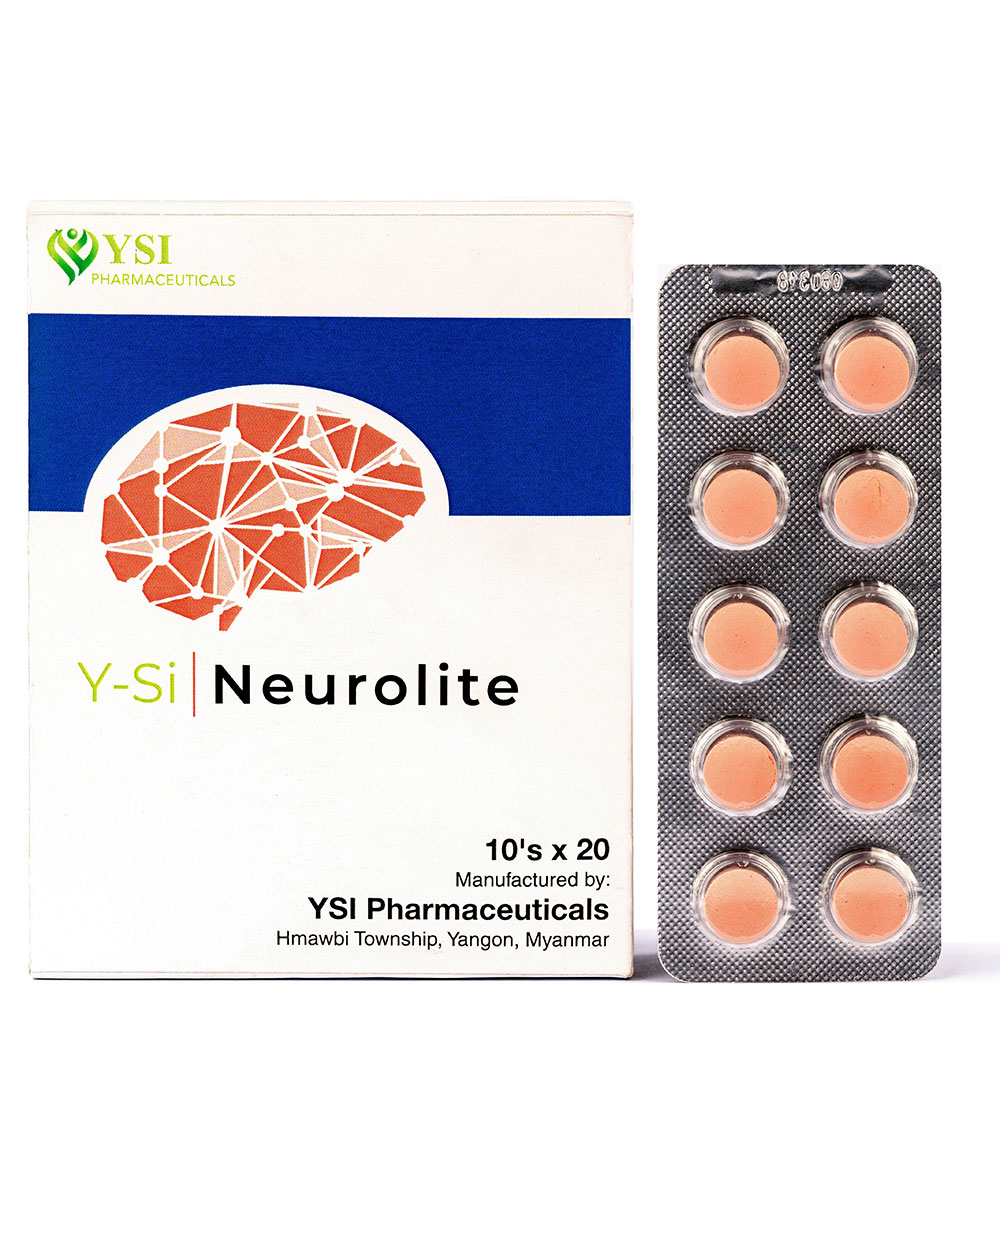 Y-Si Neurolite